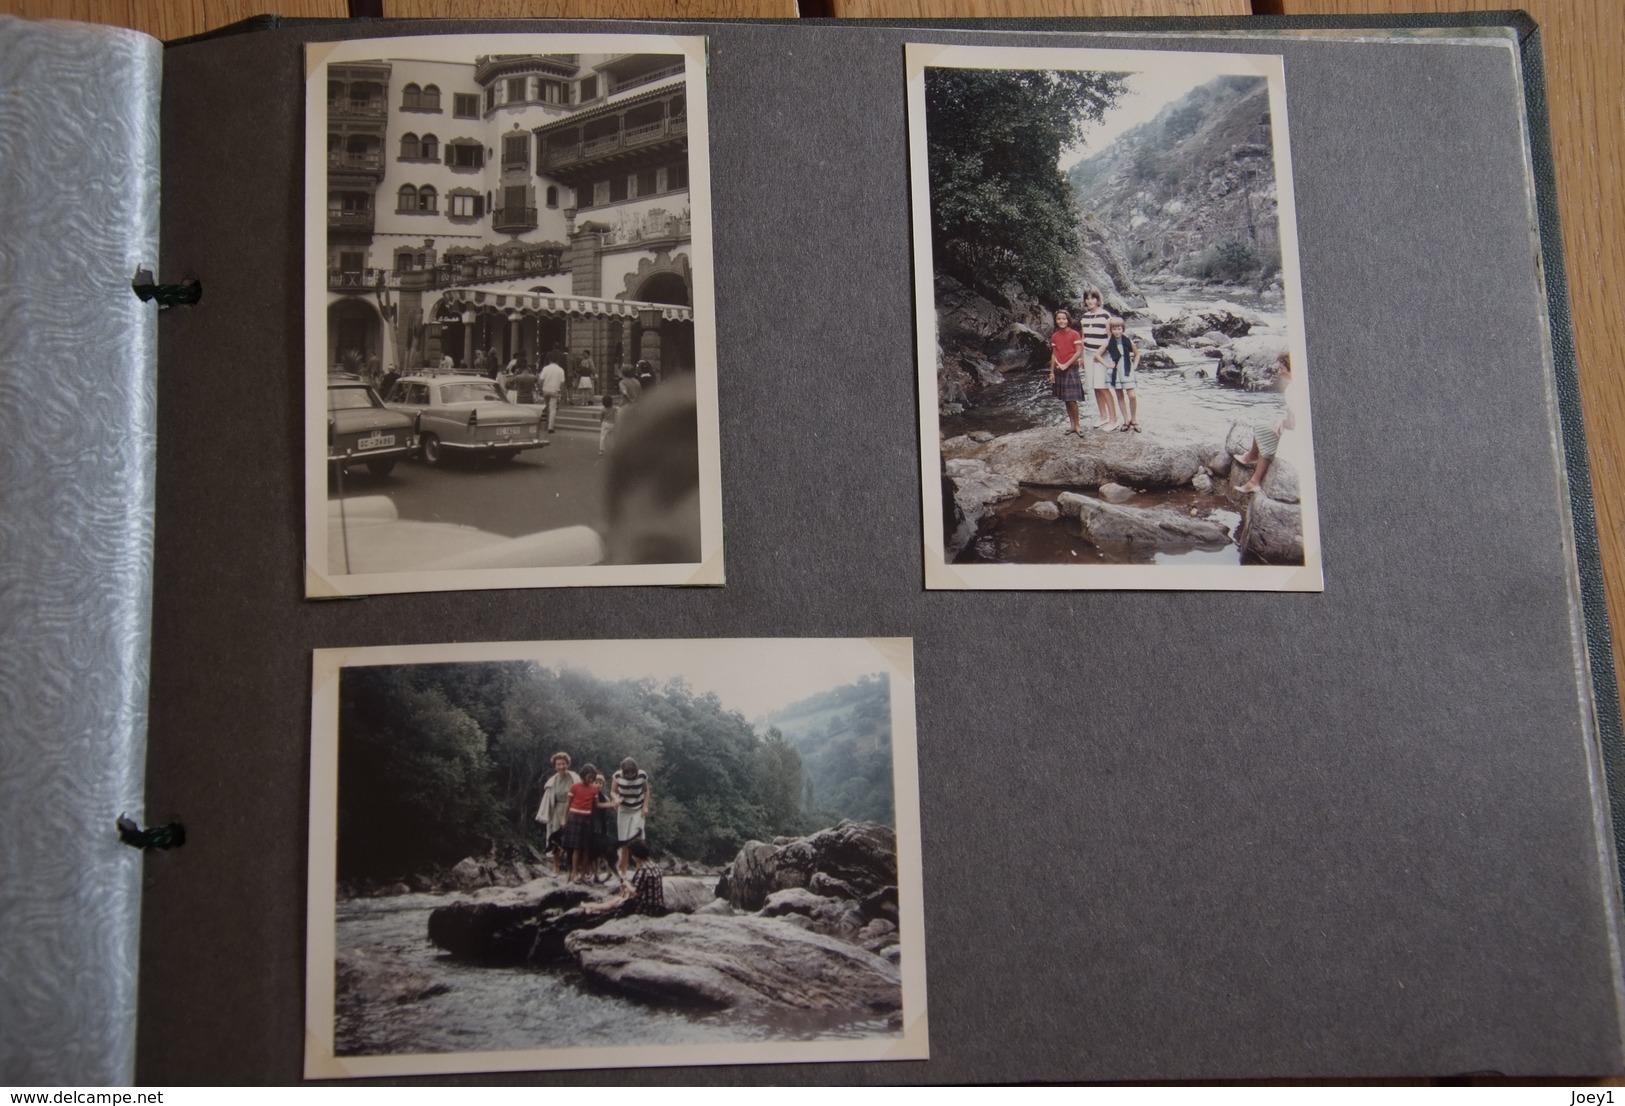 Album photos de famille année 50 et 60 noir et blanc et début couleur 120 photos